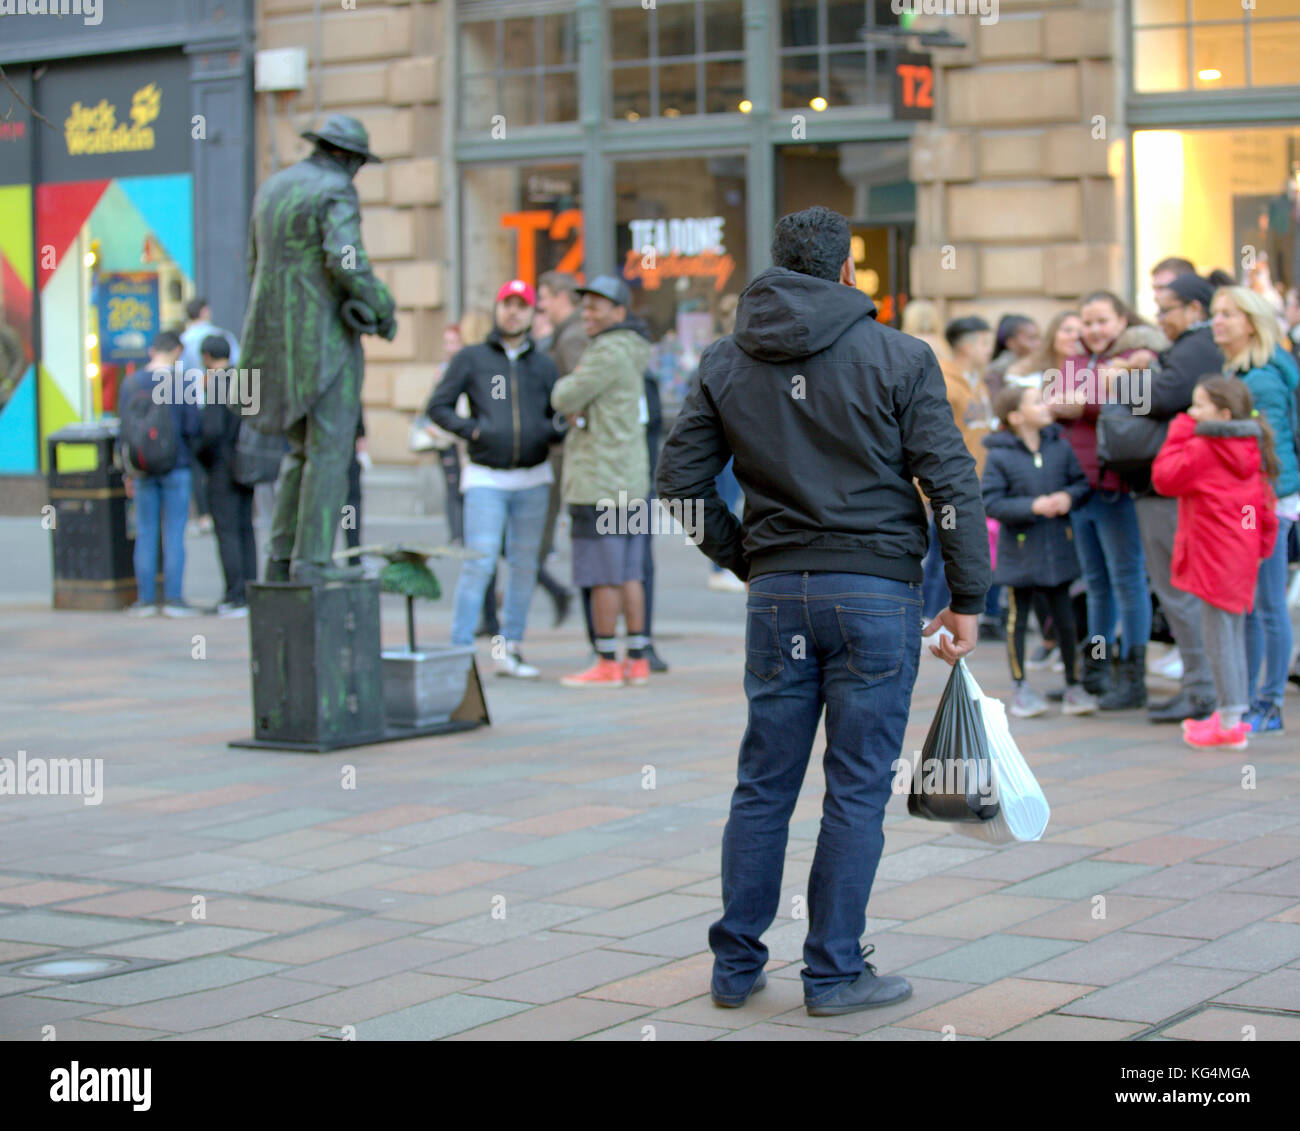 Street Performer lebende Statue mit einem posing Zuschauer in Masse auf dem Stil Meile Glasgow Buchanan Street gesehen von hinten Stockfoto